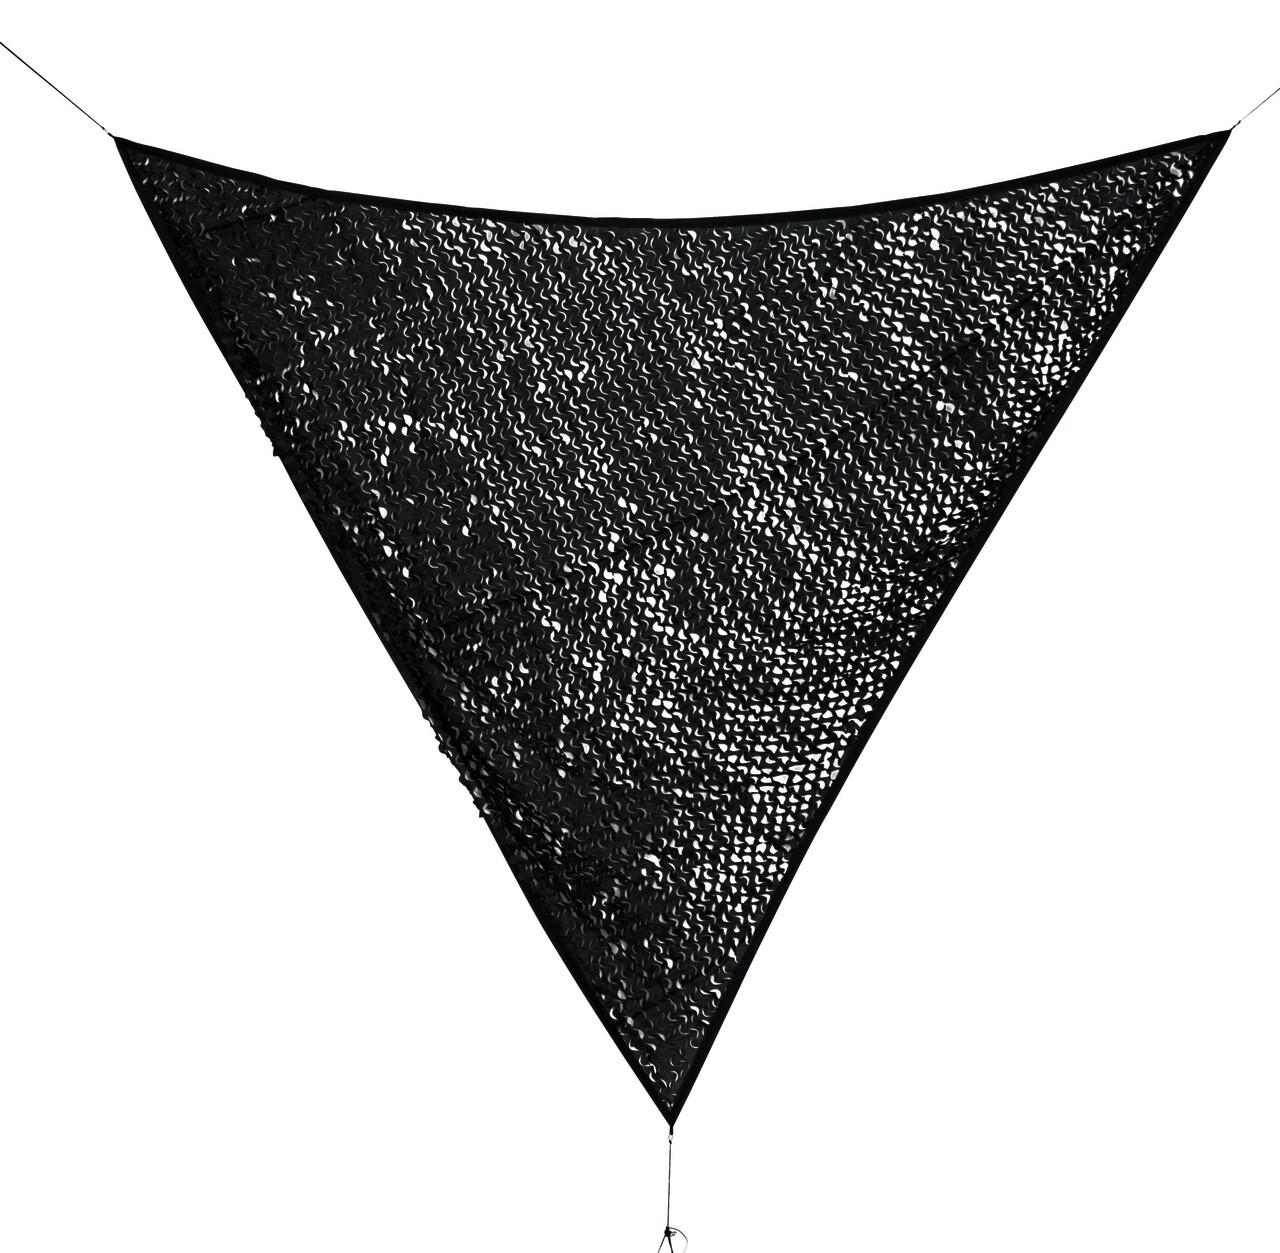 Moon Háromszögű napellenző, Bizzotto, 360 x 360 cm, poliészter, szürke